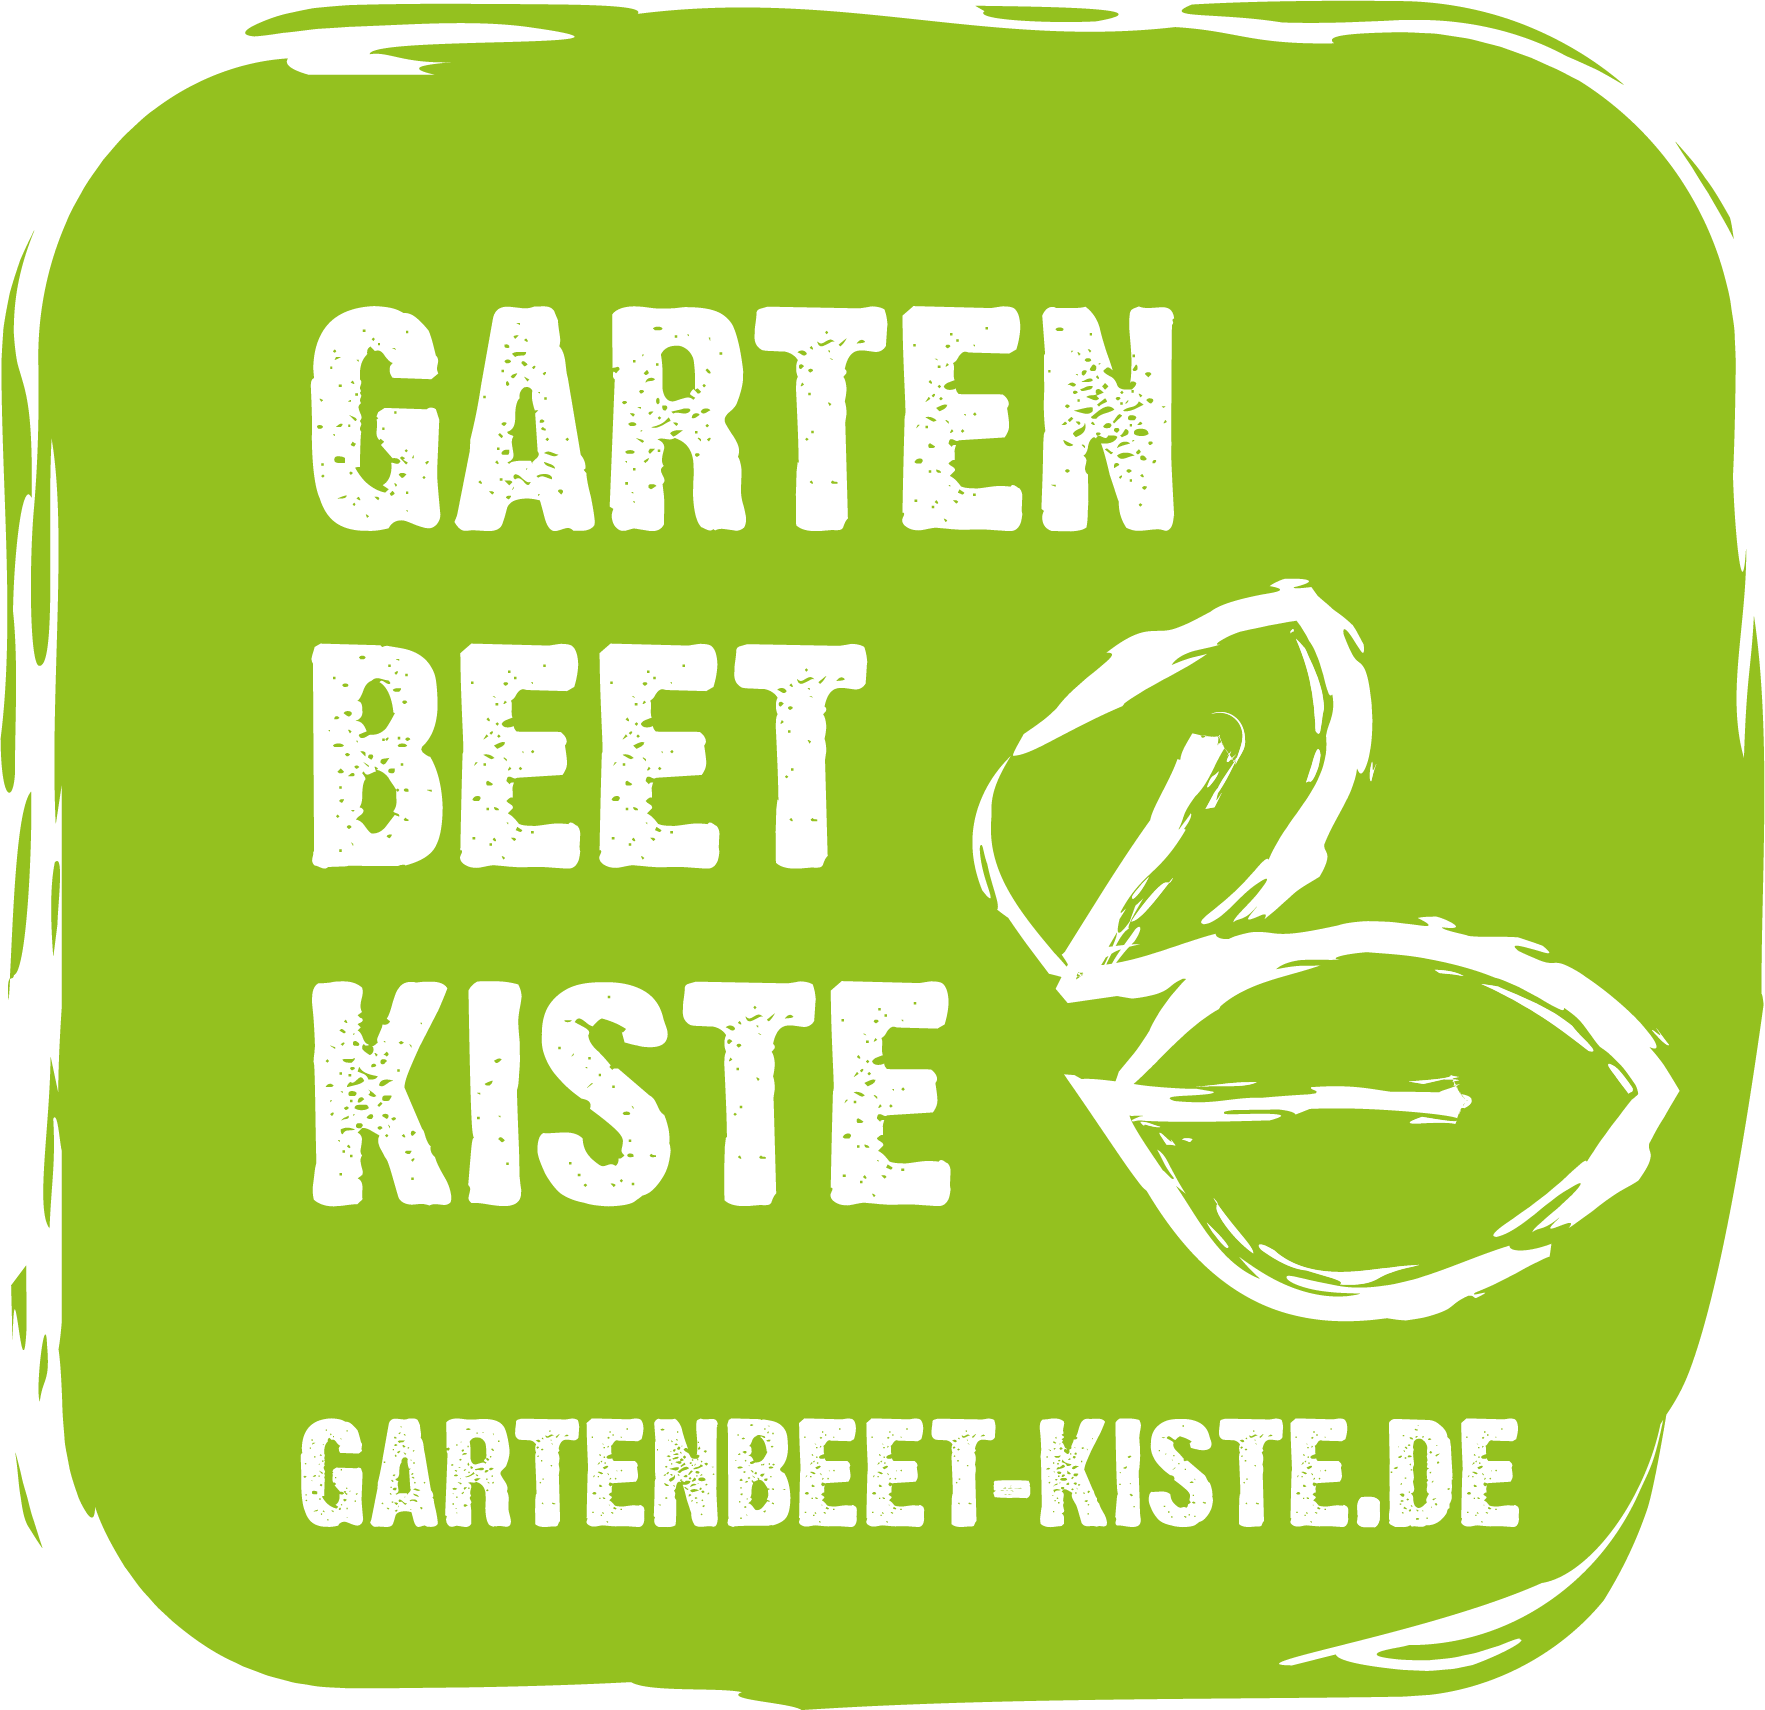 www.gartenbeet-kiste.de